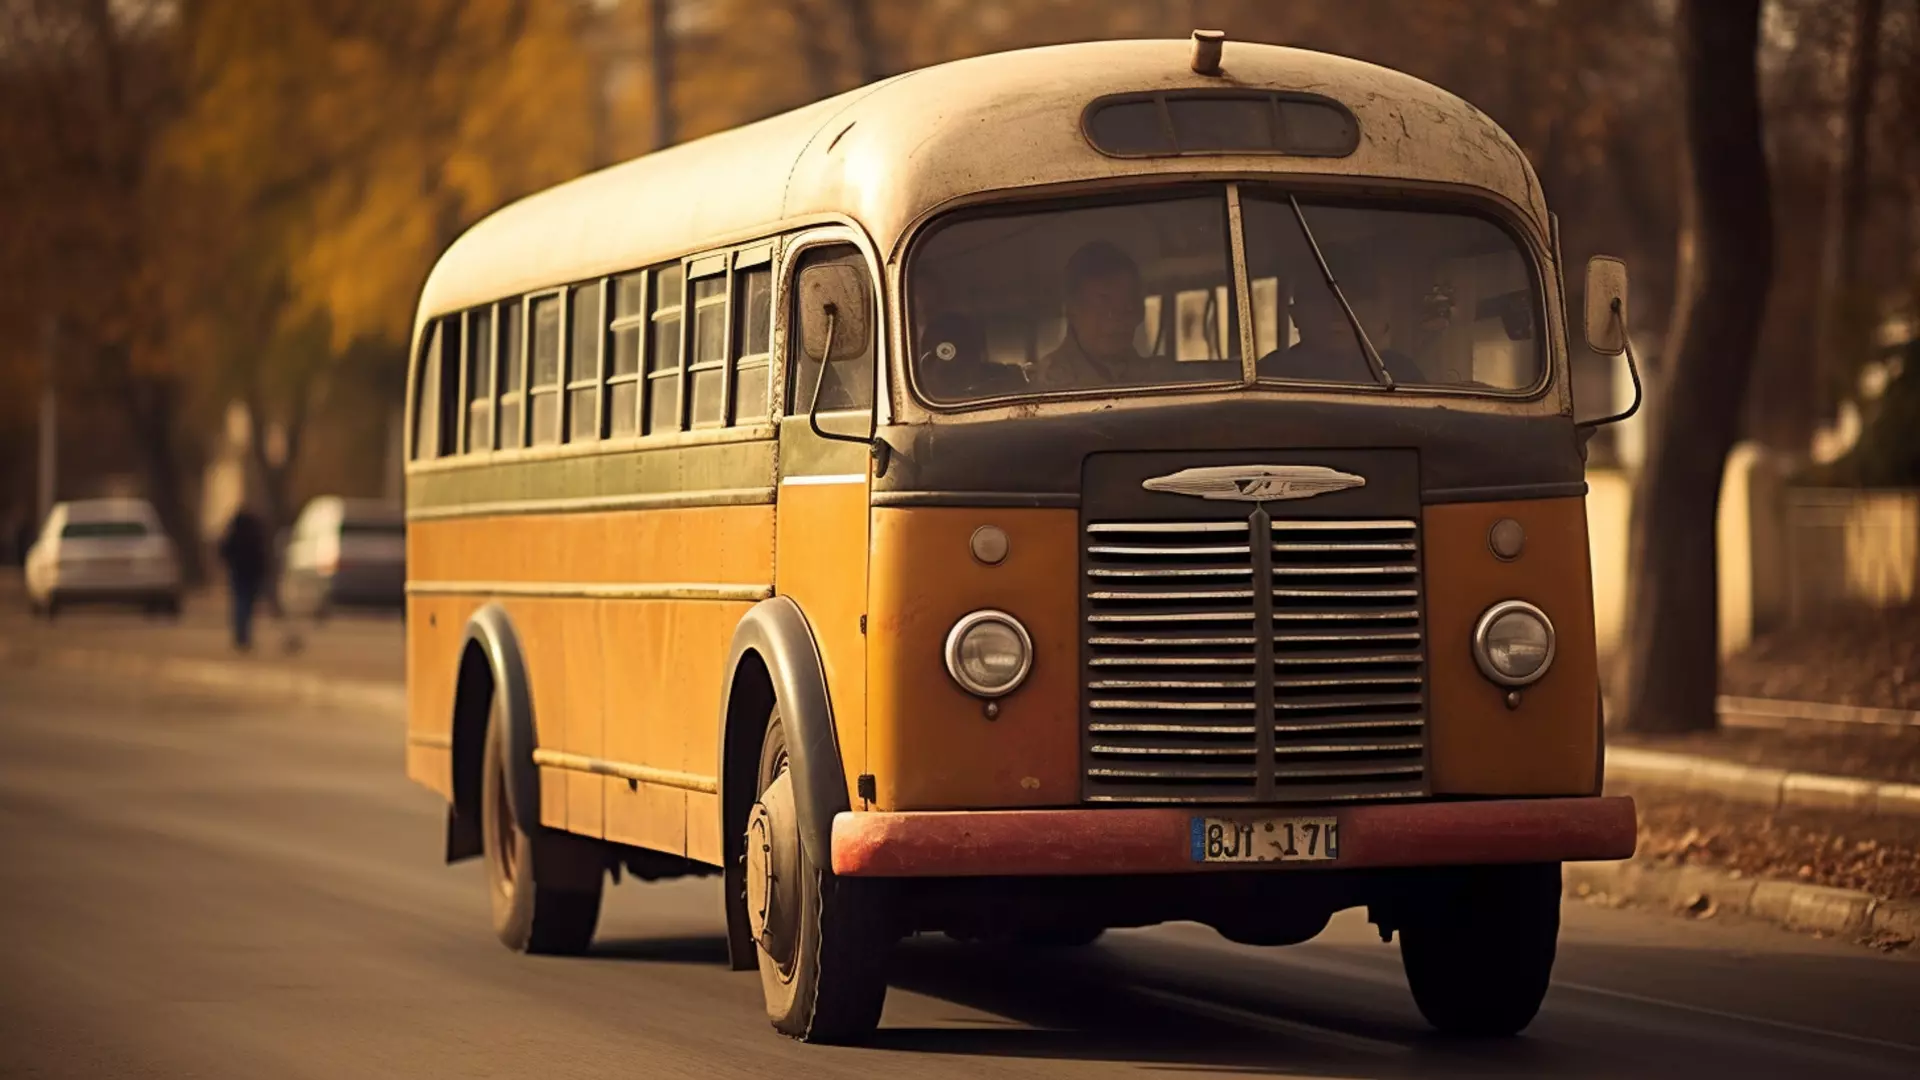 Пригородные автобусы маршрутов №331 и №373 в Ижевске изменят расписание с 9 января